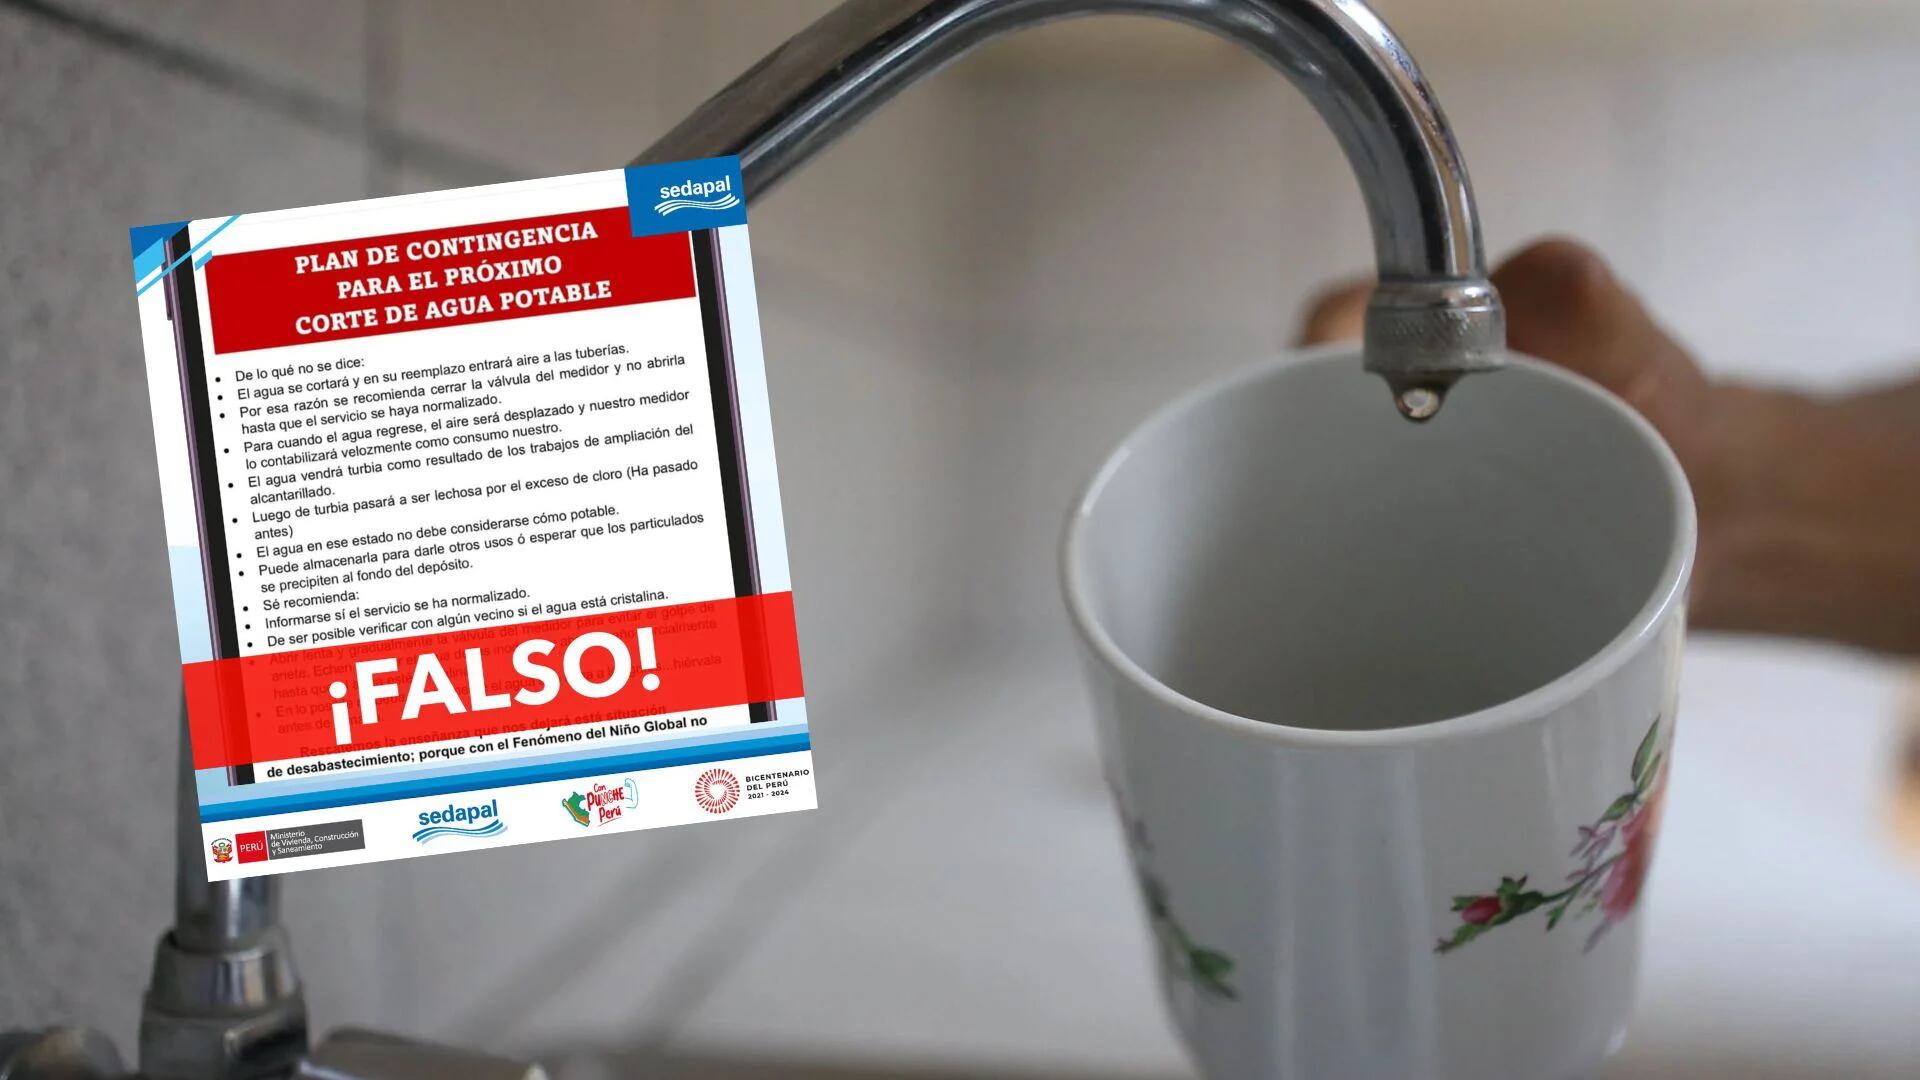 "El agua vendrá turbia": Sedapal advierte sobre difusión de comunicados falsos sobre corte masivo de agua